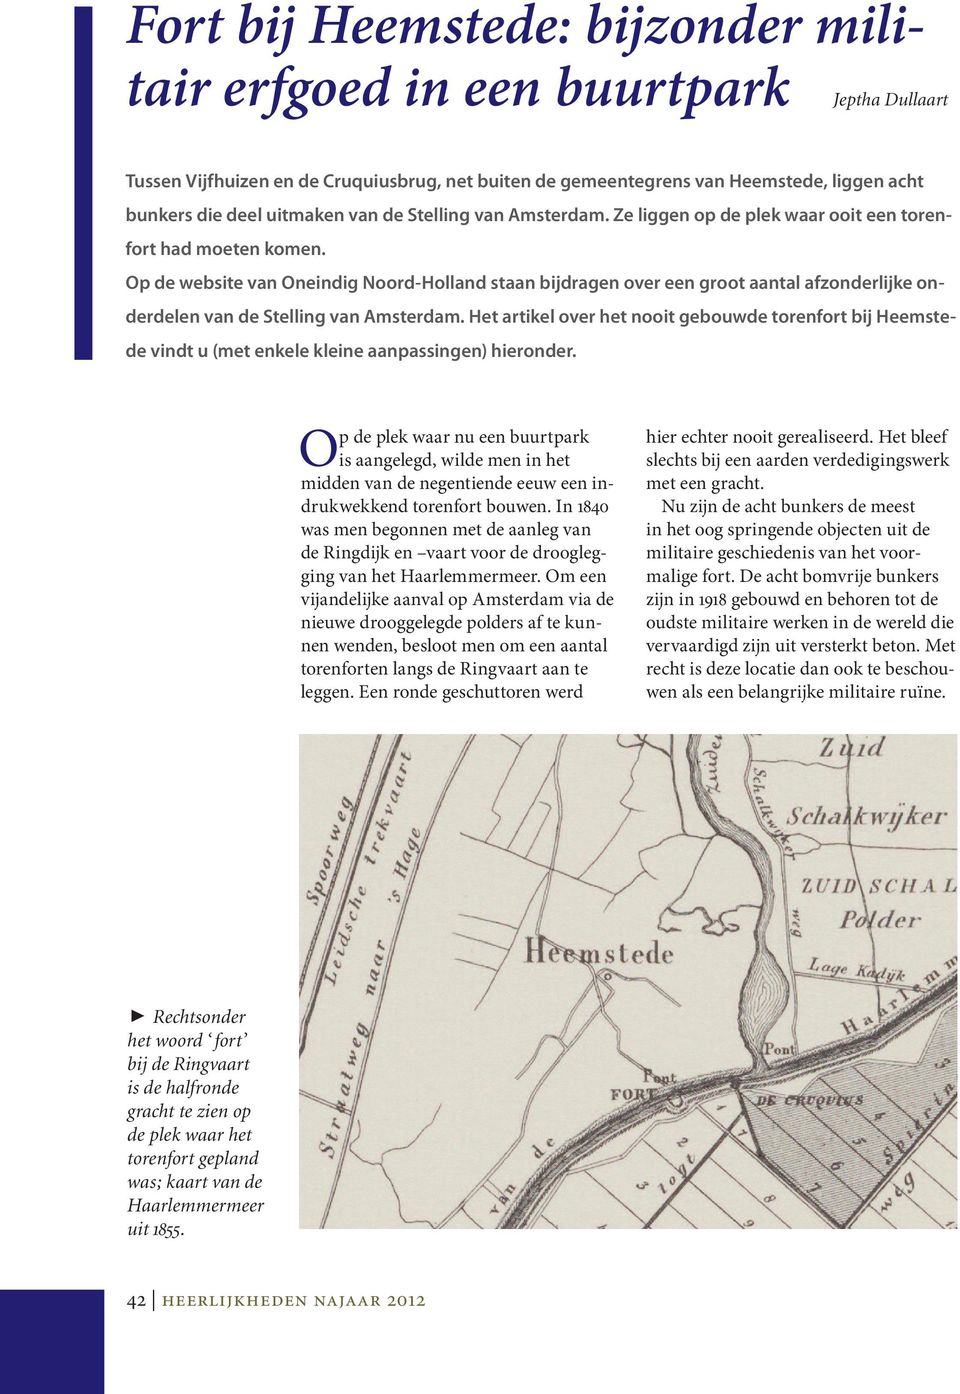 Op de website van Oneindig Noord-Holland staan bijdragen over een groot aantal afzonderlijke onderdelen van de Stelling van Amsterdam.